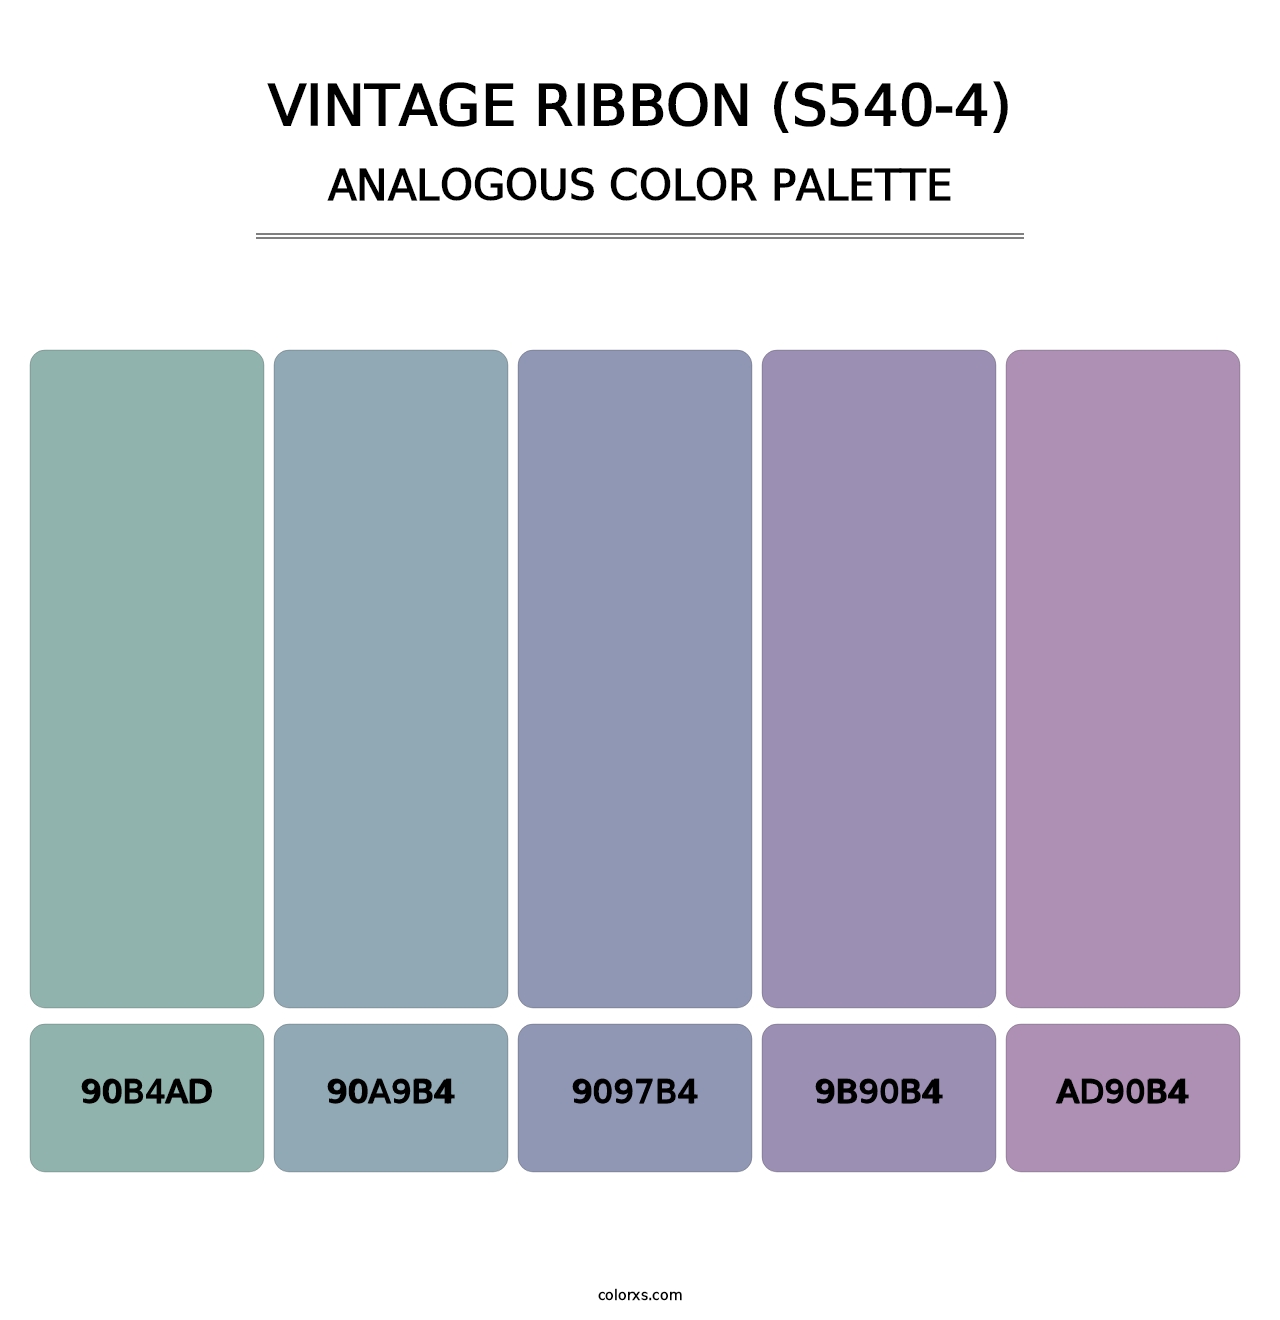 Vintage Ribbon (S540-4) - Analogous Color Palette